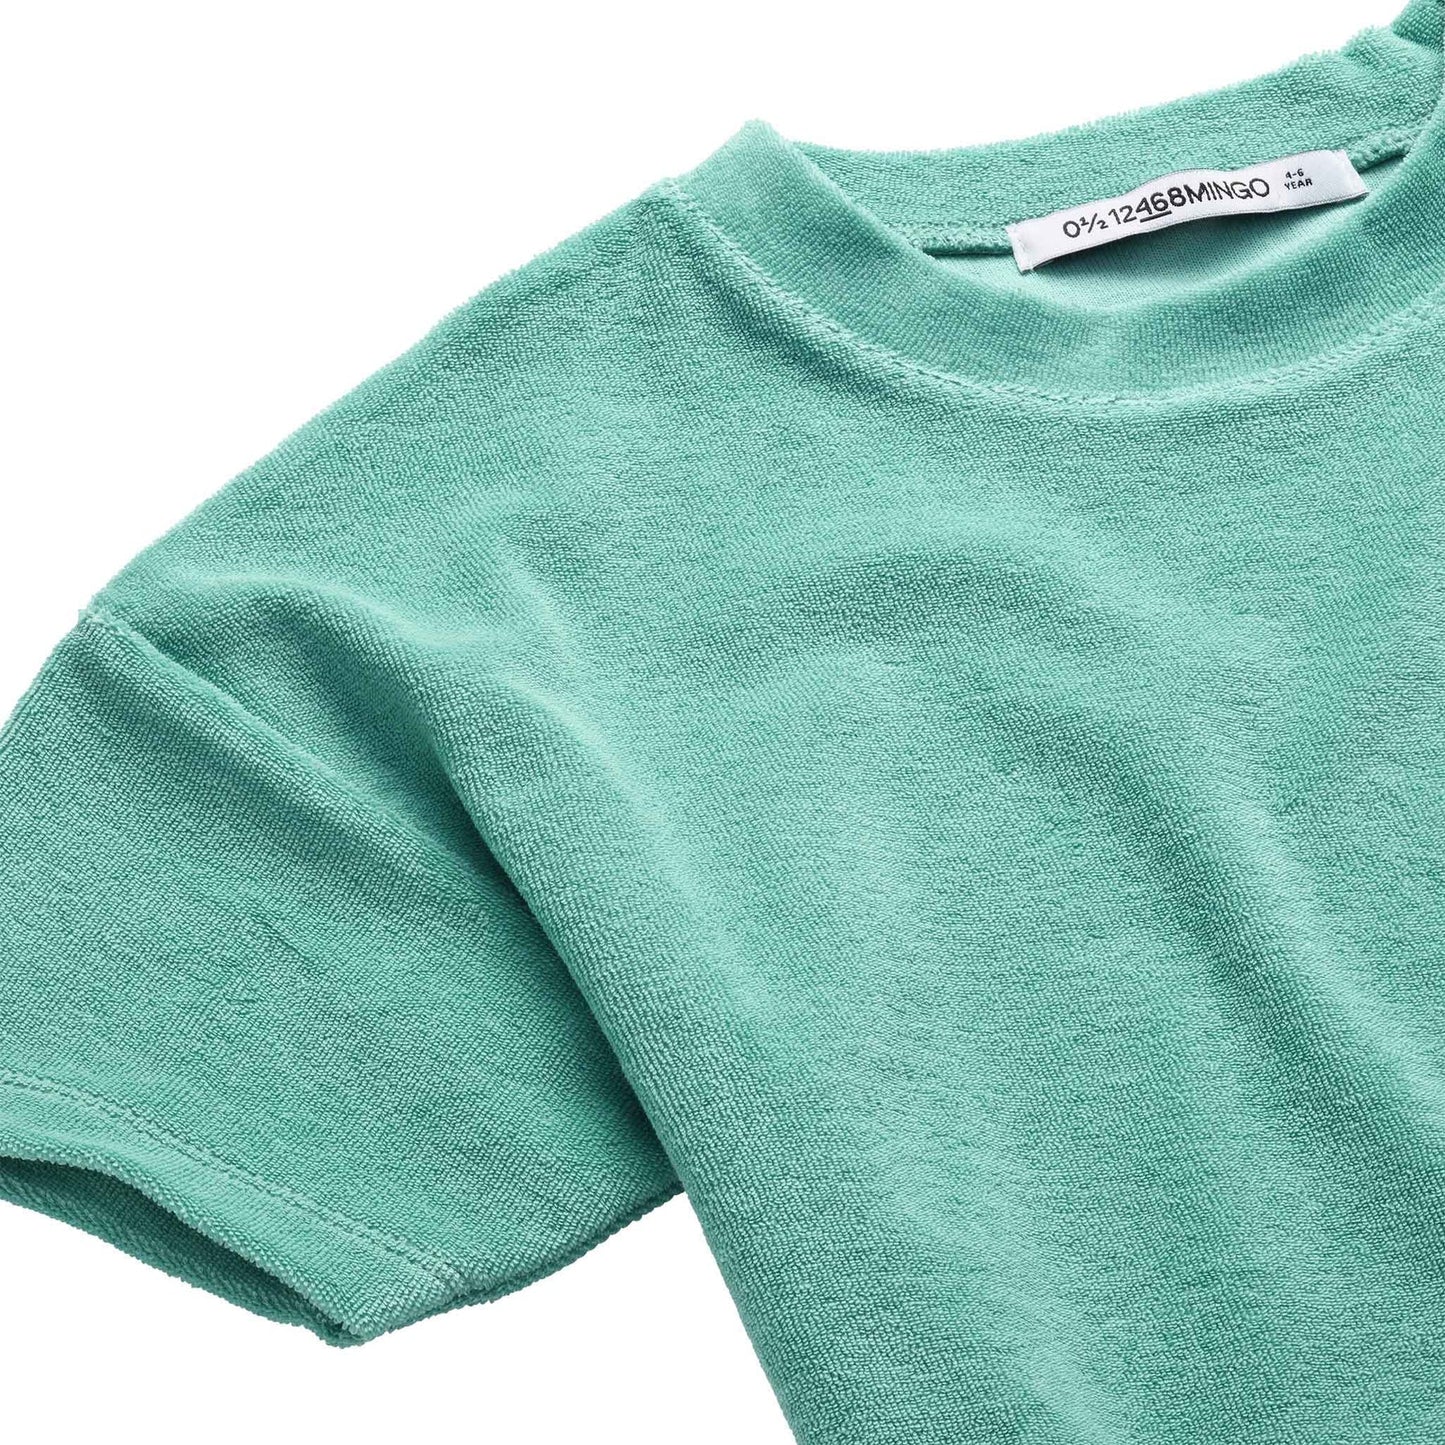 MINGO T-Shirt Emerald Sea ALWAYS SHOW